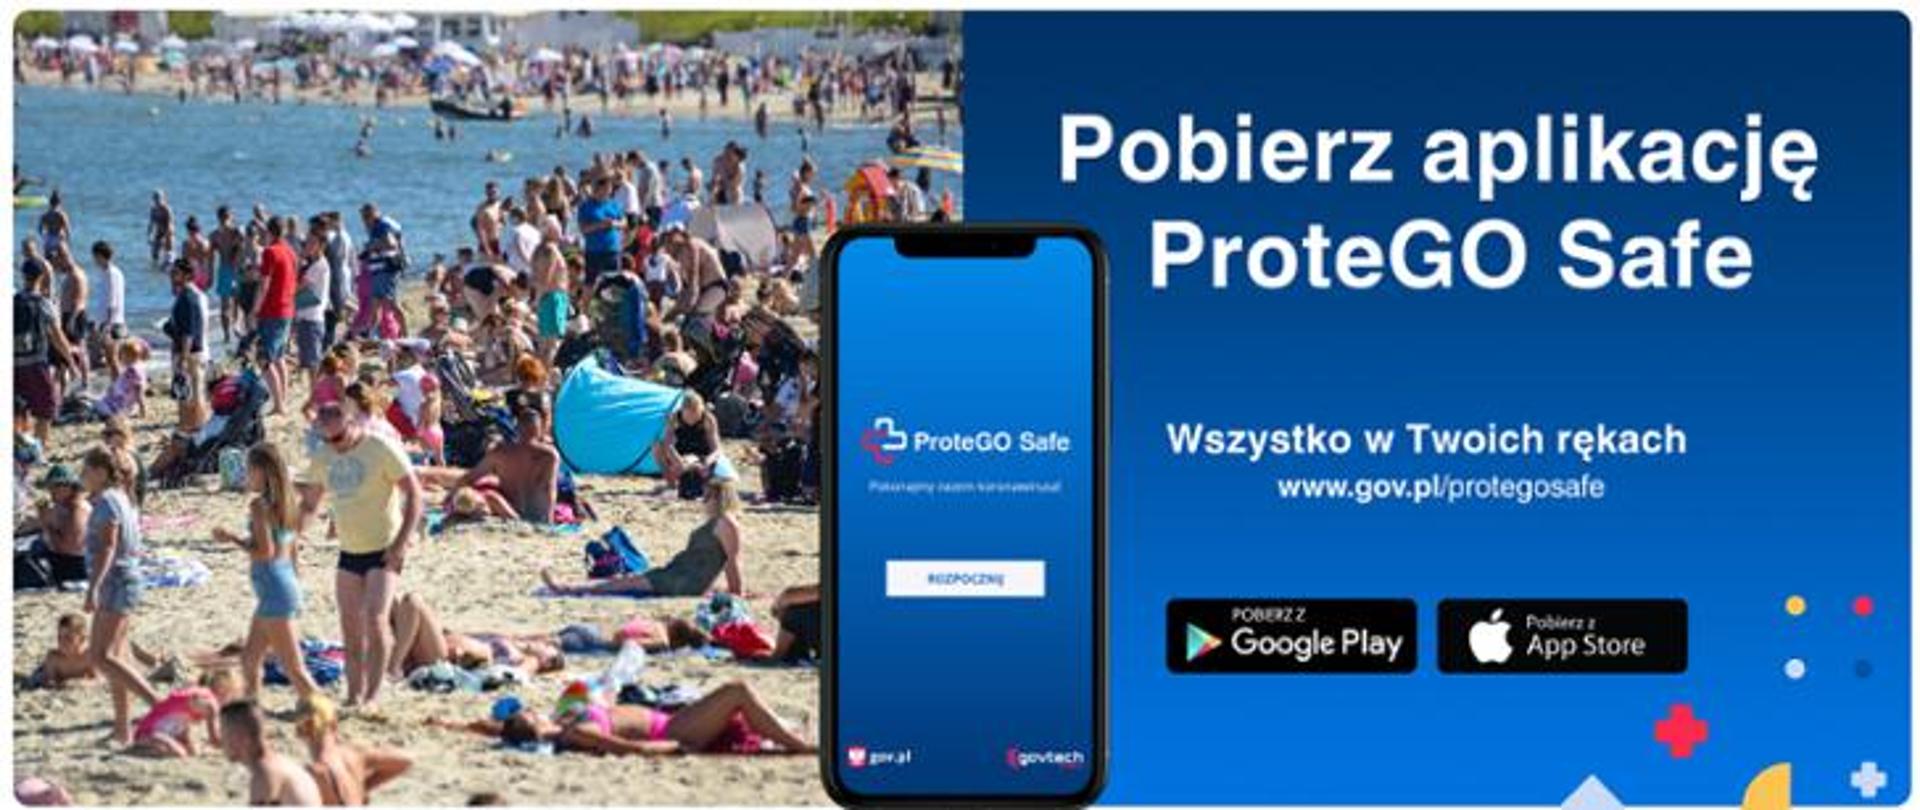 Niebieskie tło z napisem Pobierz aplikację ProteGO Safe. Obok zdjęcie ludzi na plaży.